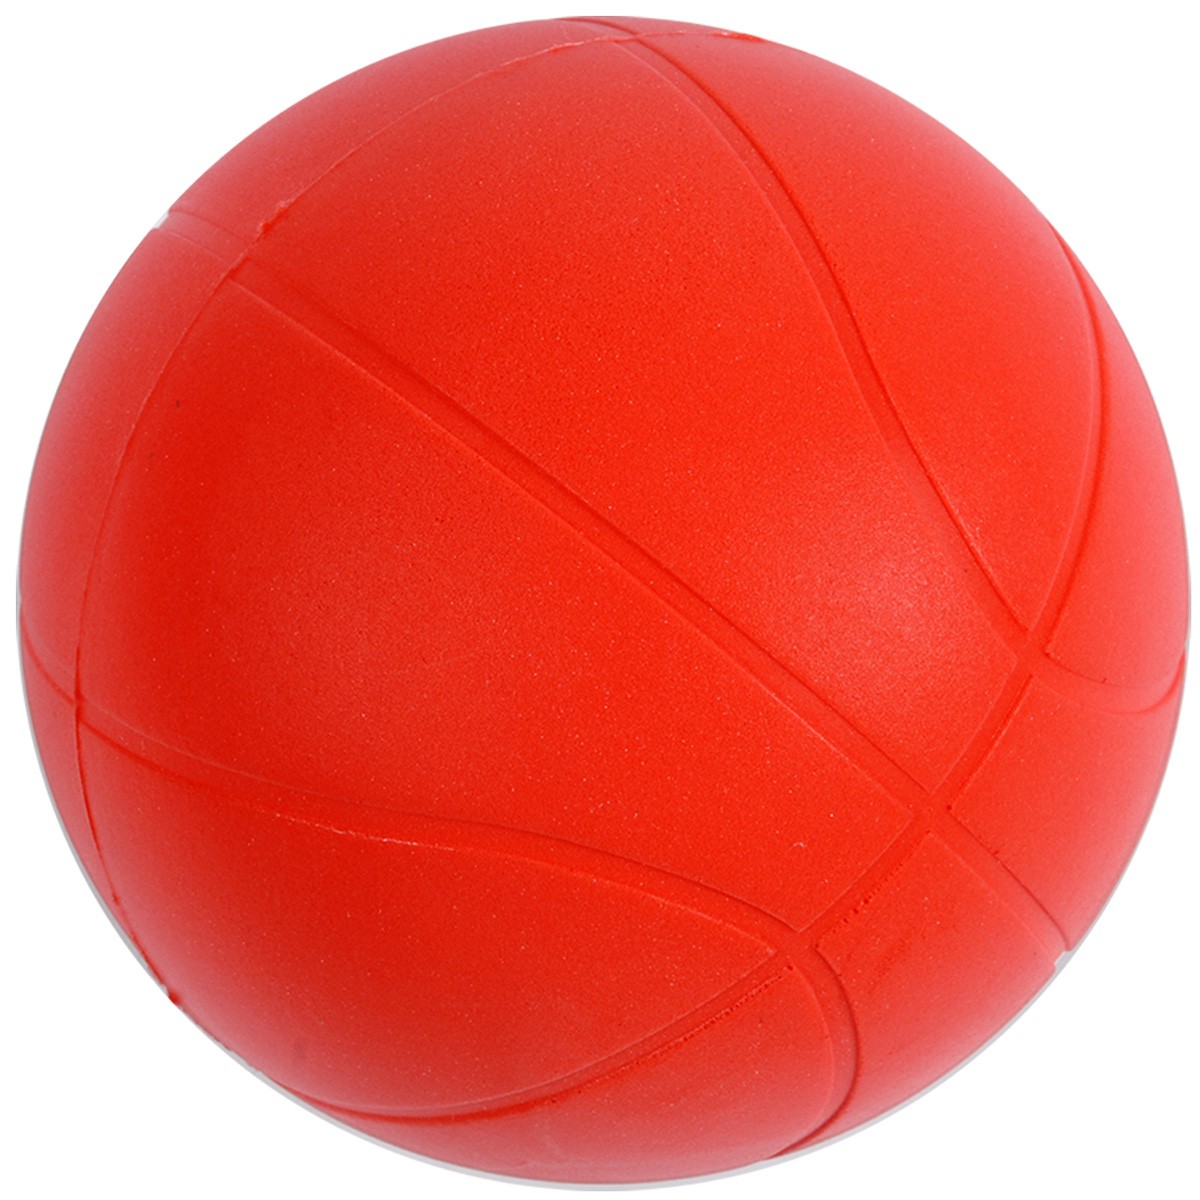 CONFO® Ballon de basket-ball en caoutchouc mousse, articles de